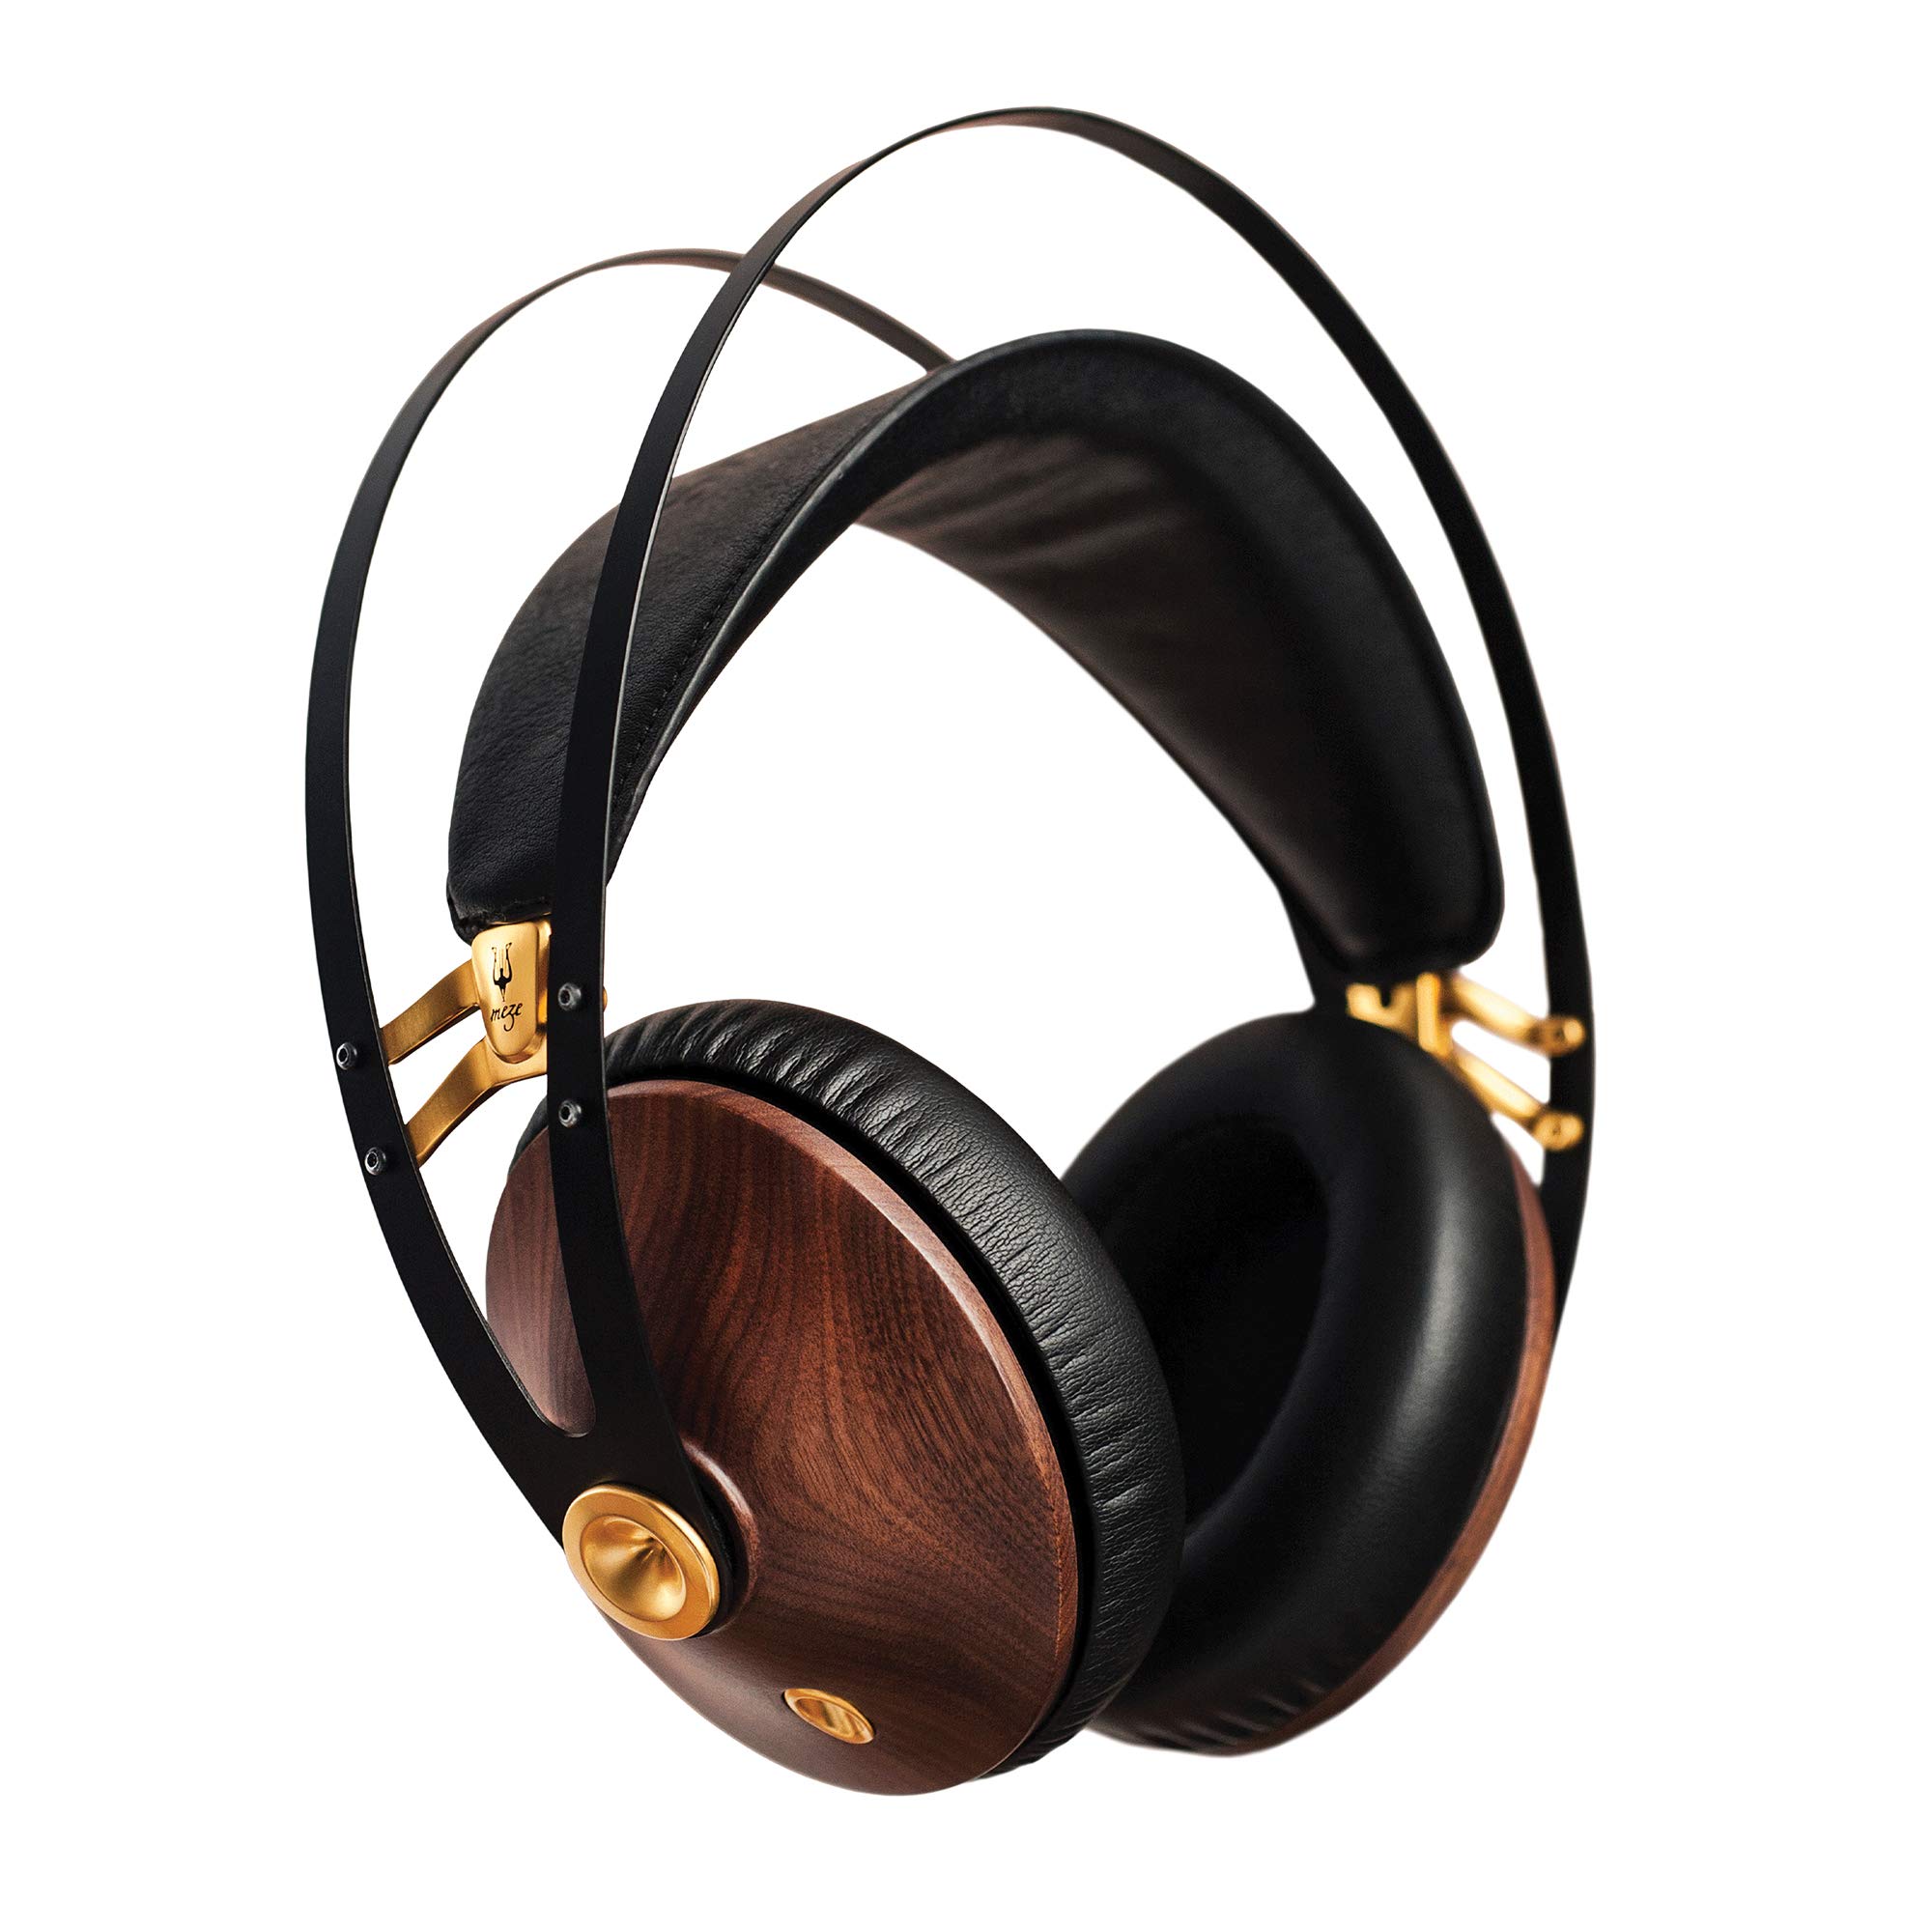  Meze Headphones Meze 99 Classics Orzech Złoty | Przewodowe słuchawki nauszne z mikrofonem i regulowanym pałąkiem na głowę | Klasyczny drewniany zestaw słuchawkowy z zamkniętą tylną częścią...